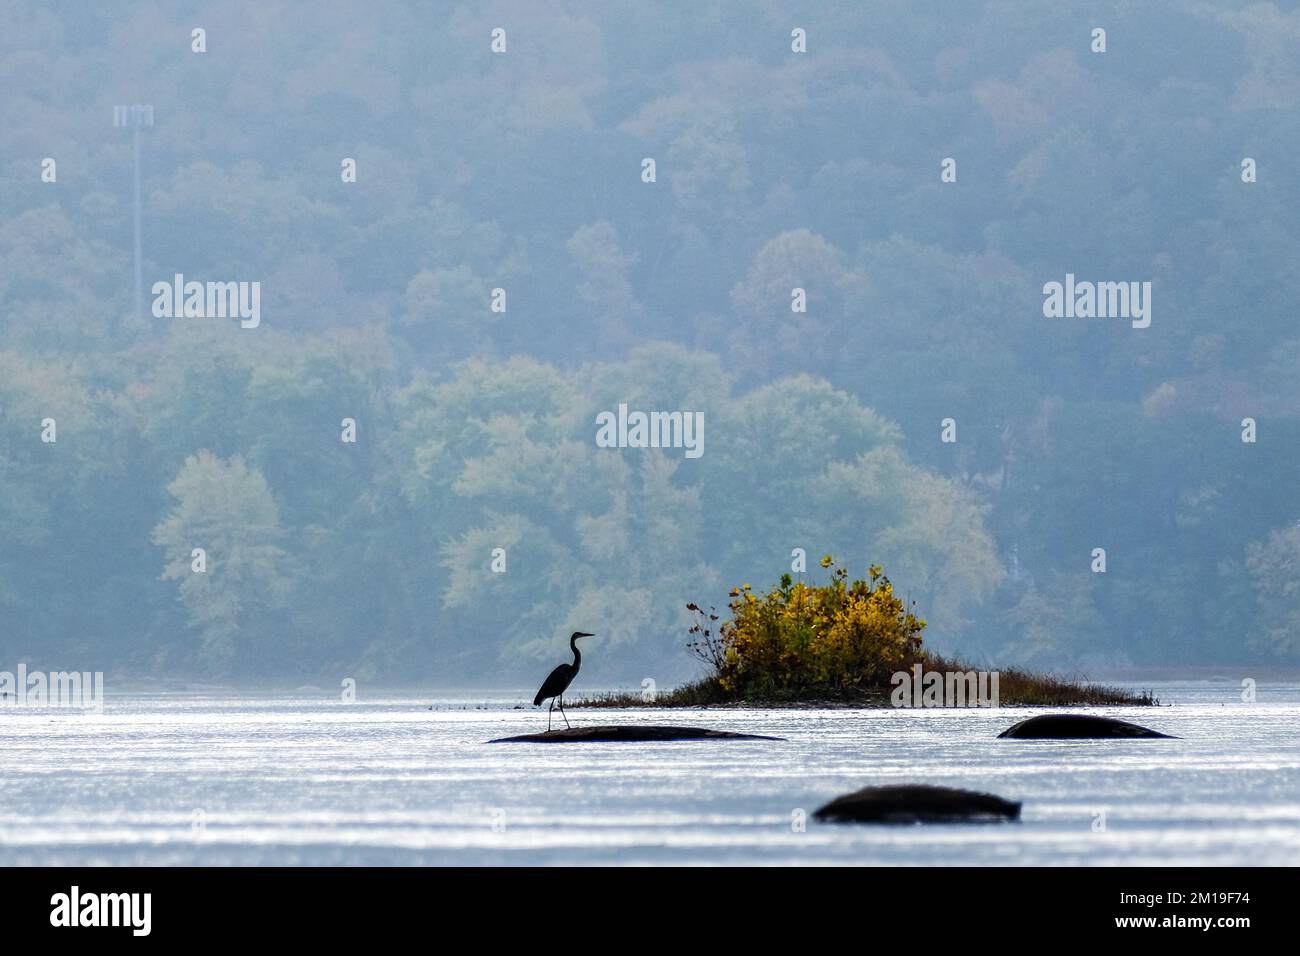 Grand héron bleu en automne sur la rivière Susquehanna, vallée de la rivière Susquehanna, près de Dauphin, Pennsylvanie, États-Unis, Région du centre de l'Atlantique. Banque D'Images